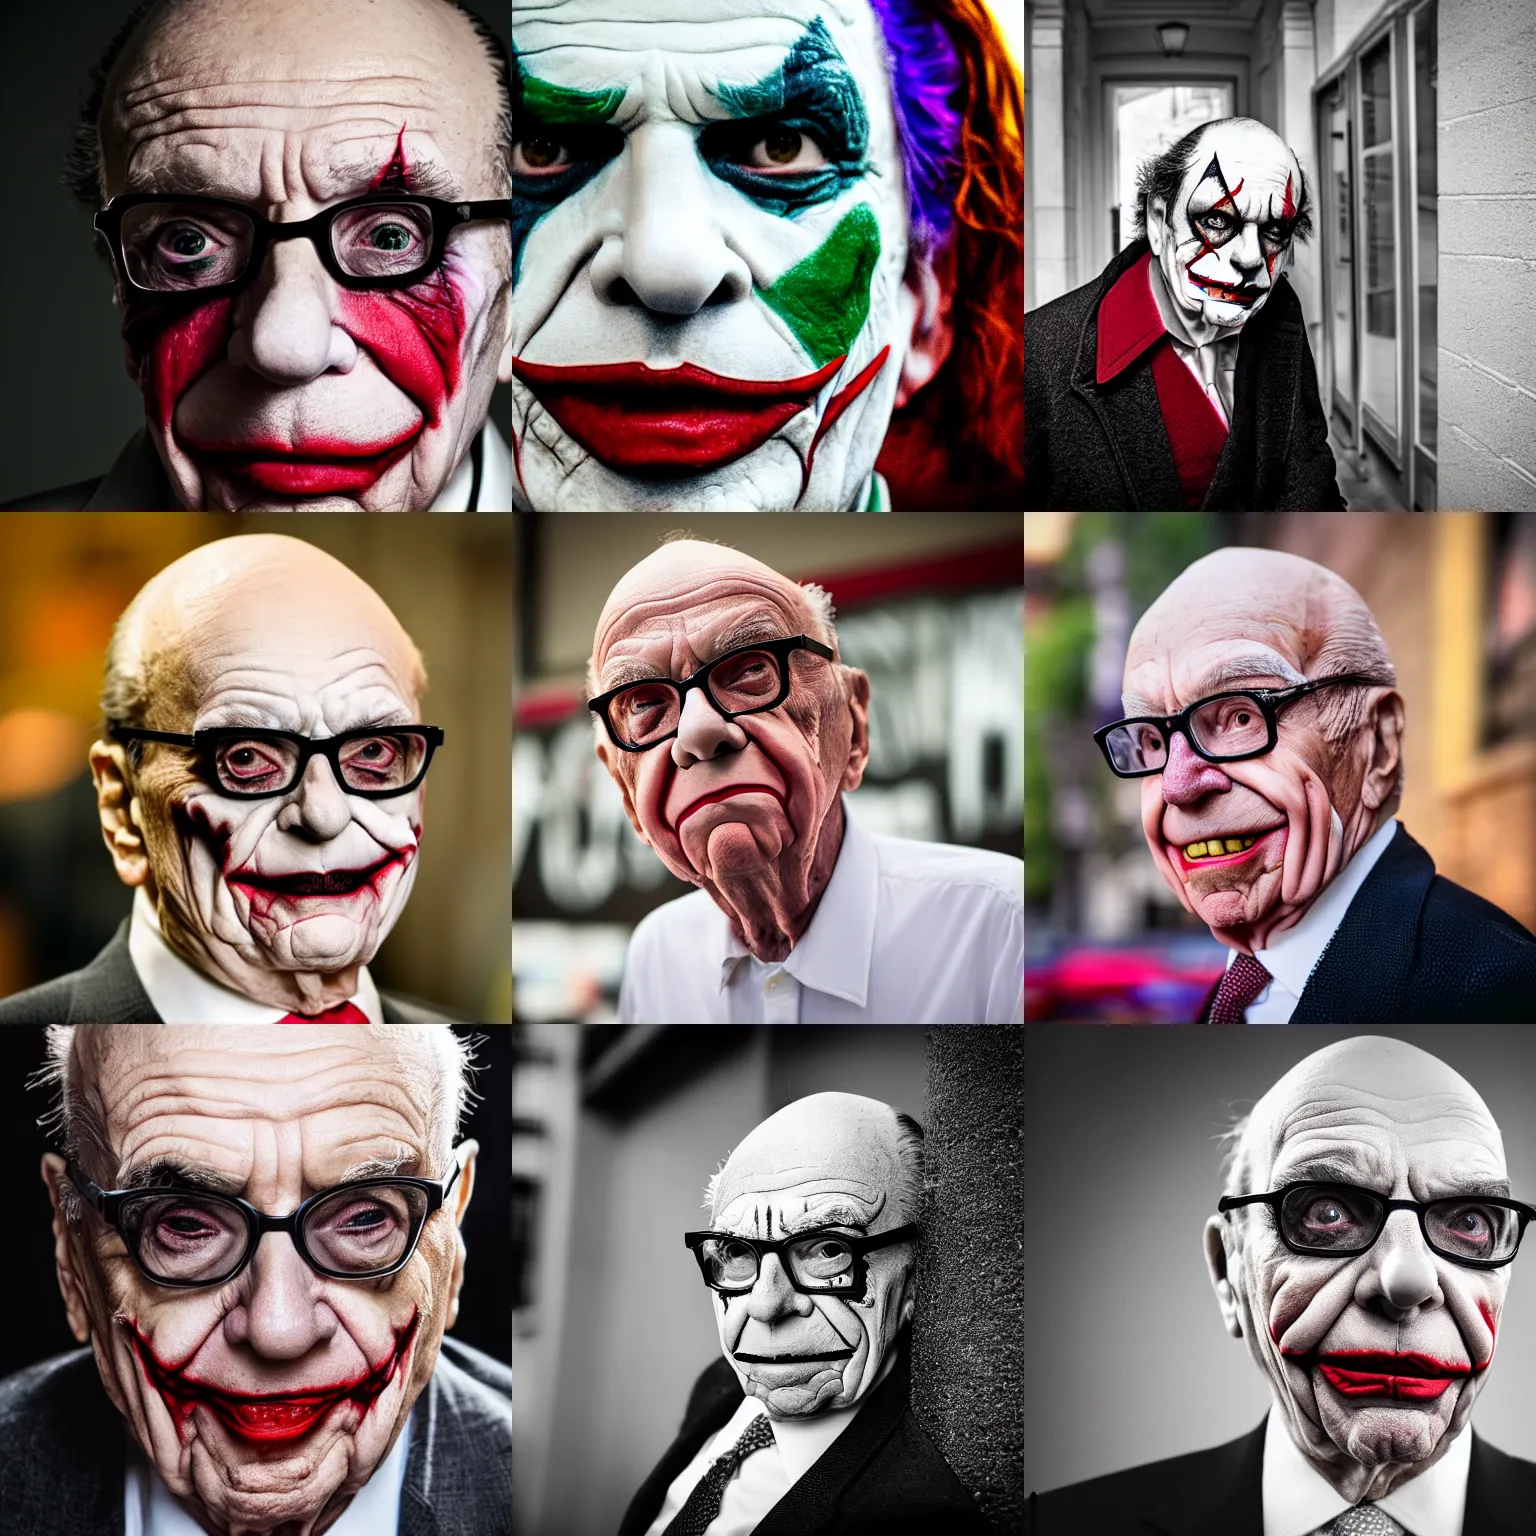 Prompt: Rupert Murdoch as the joker, Rupert Murdoch, joker makeup, portrait photography, depth of field, bokeh